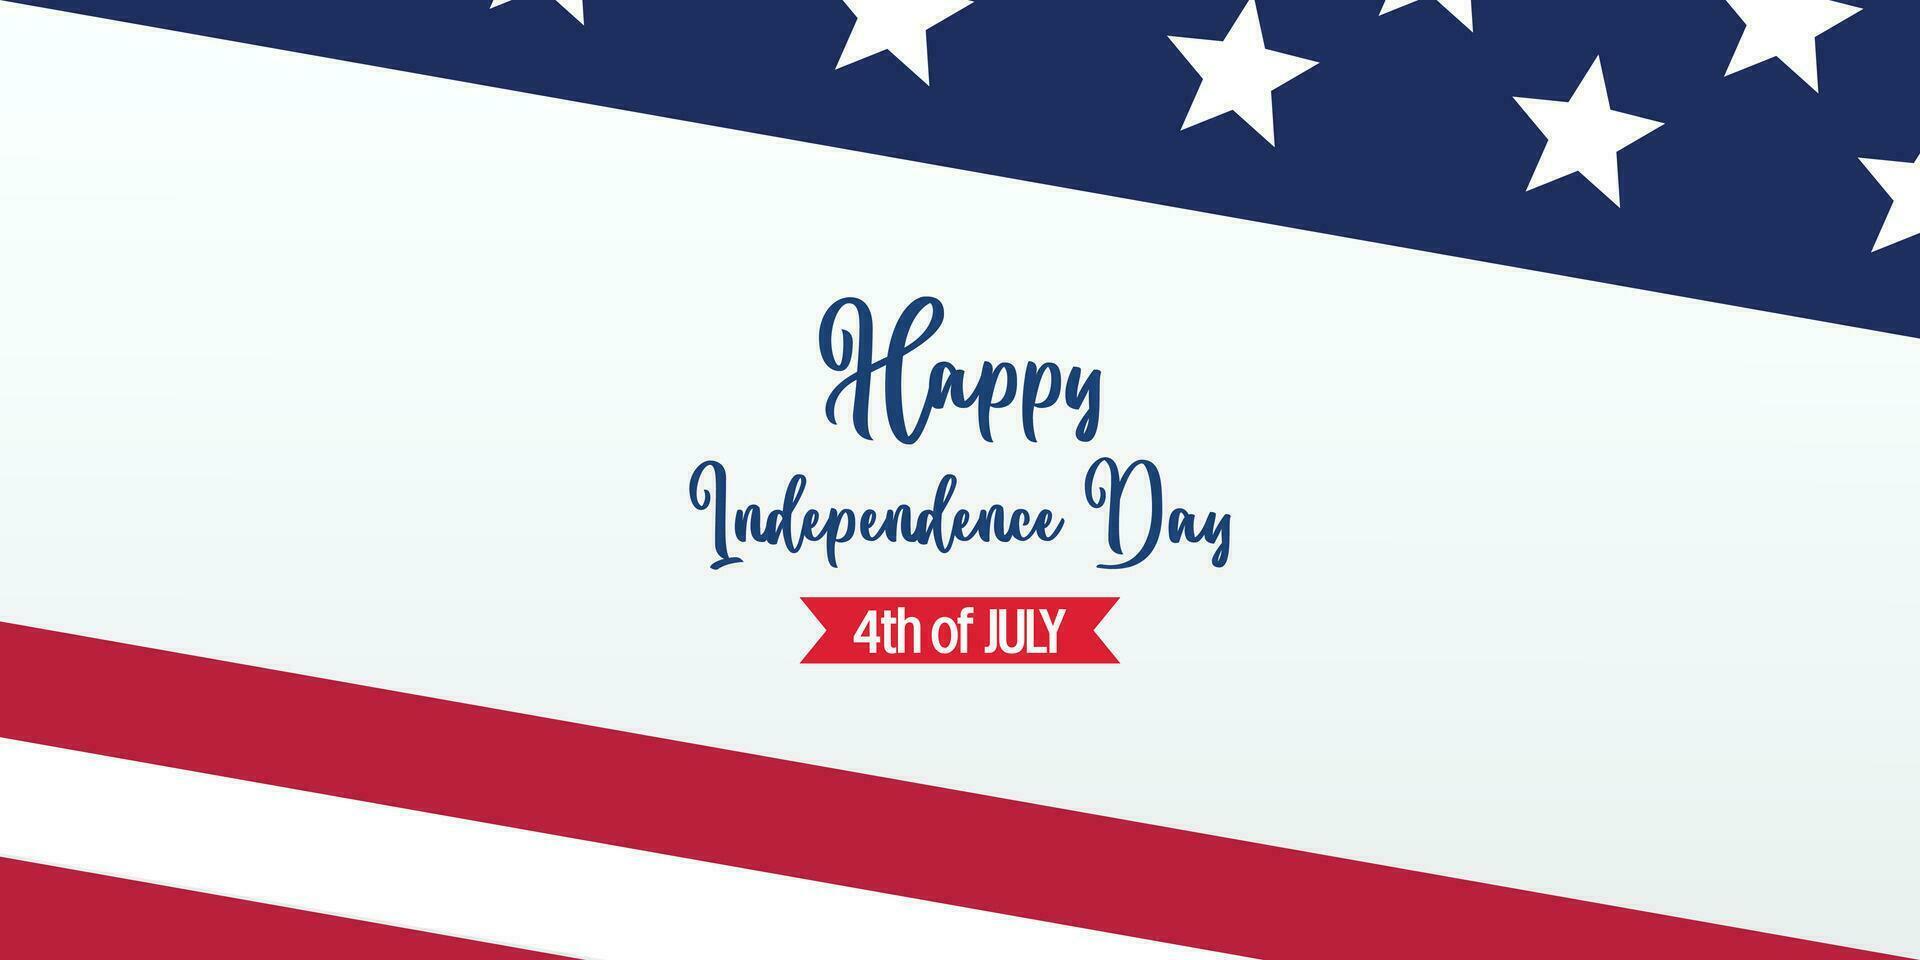 Lycklig amerikan oberoende dag bakgrund, med flagga dekoration. vektor design för baner, hälsning kort, broschyr, webb, social media.